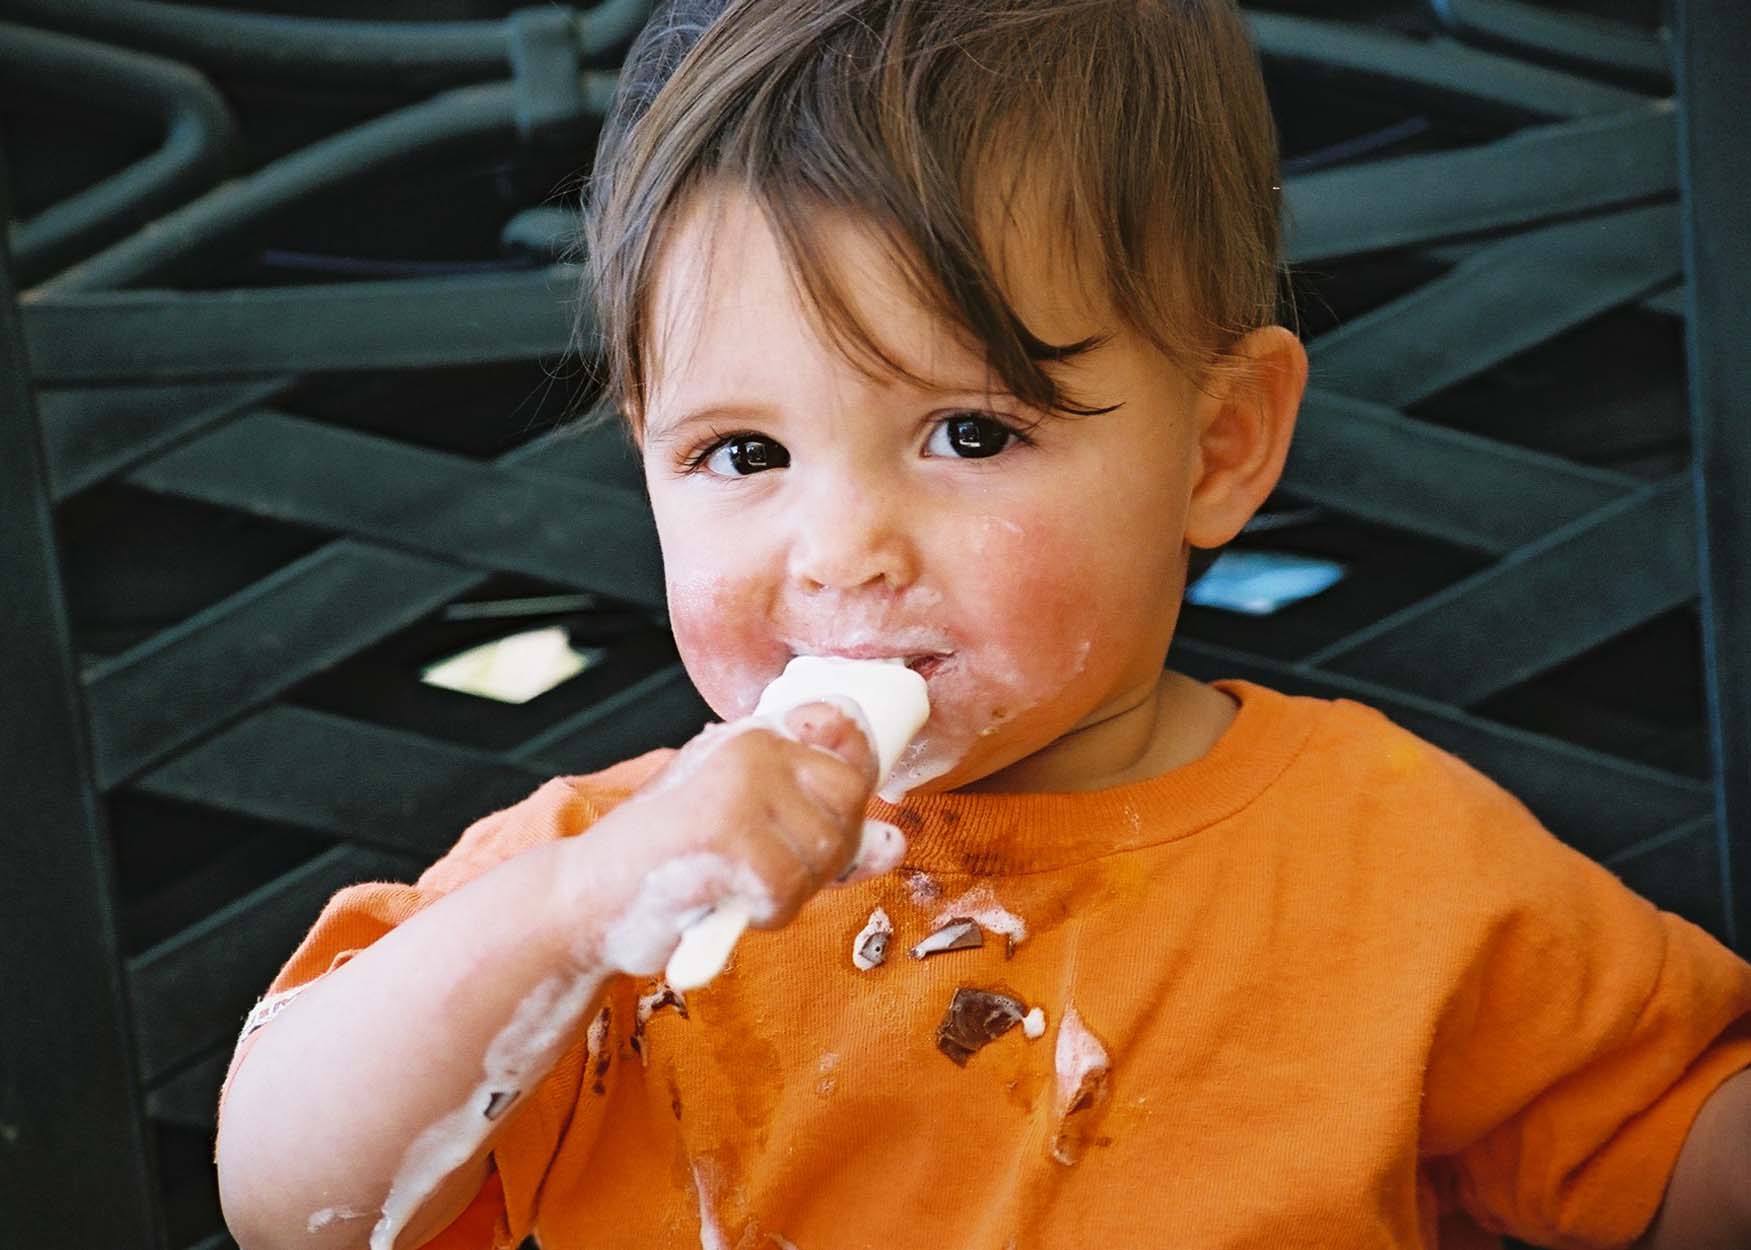 האקדמיה האמריקנית של רופאי ילדים: לעודד צריכת מוצרי חלב